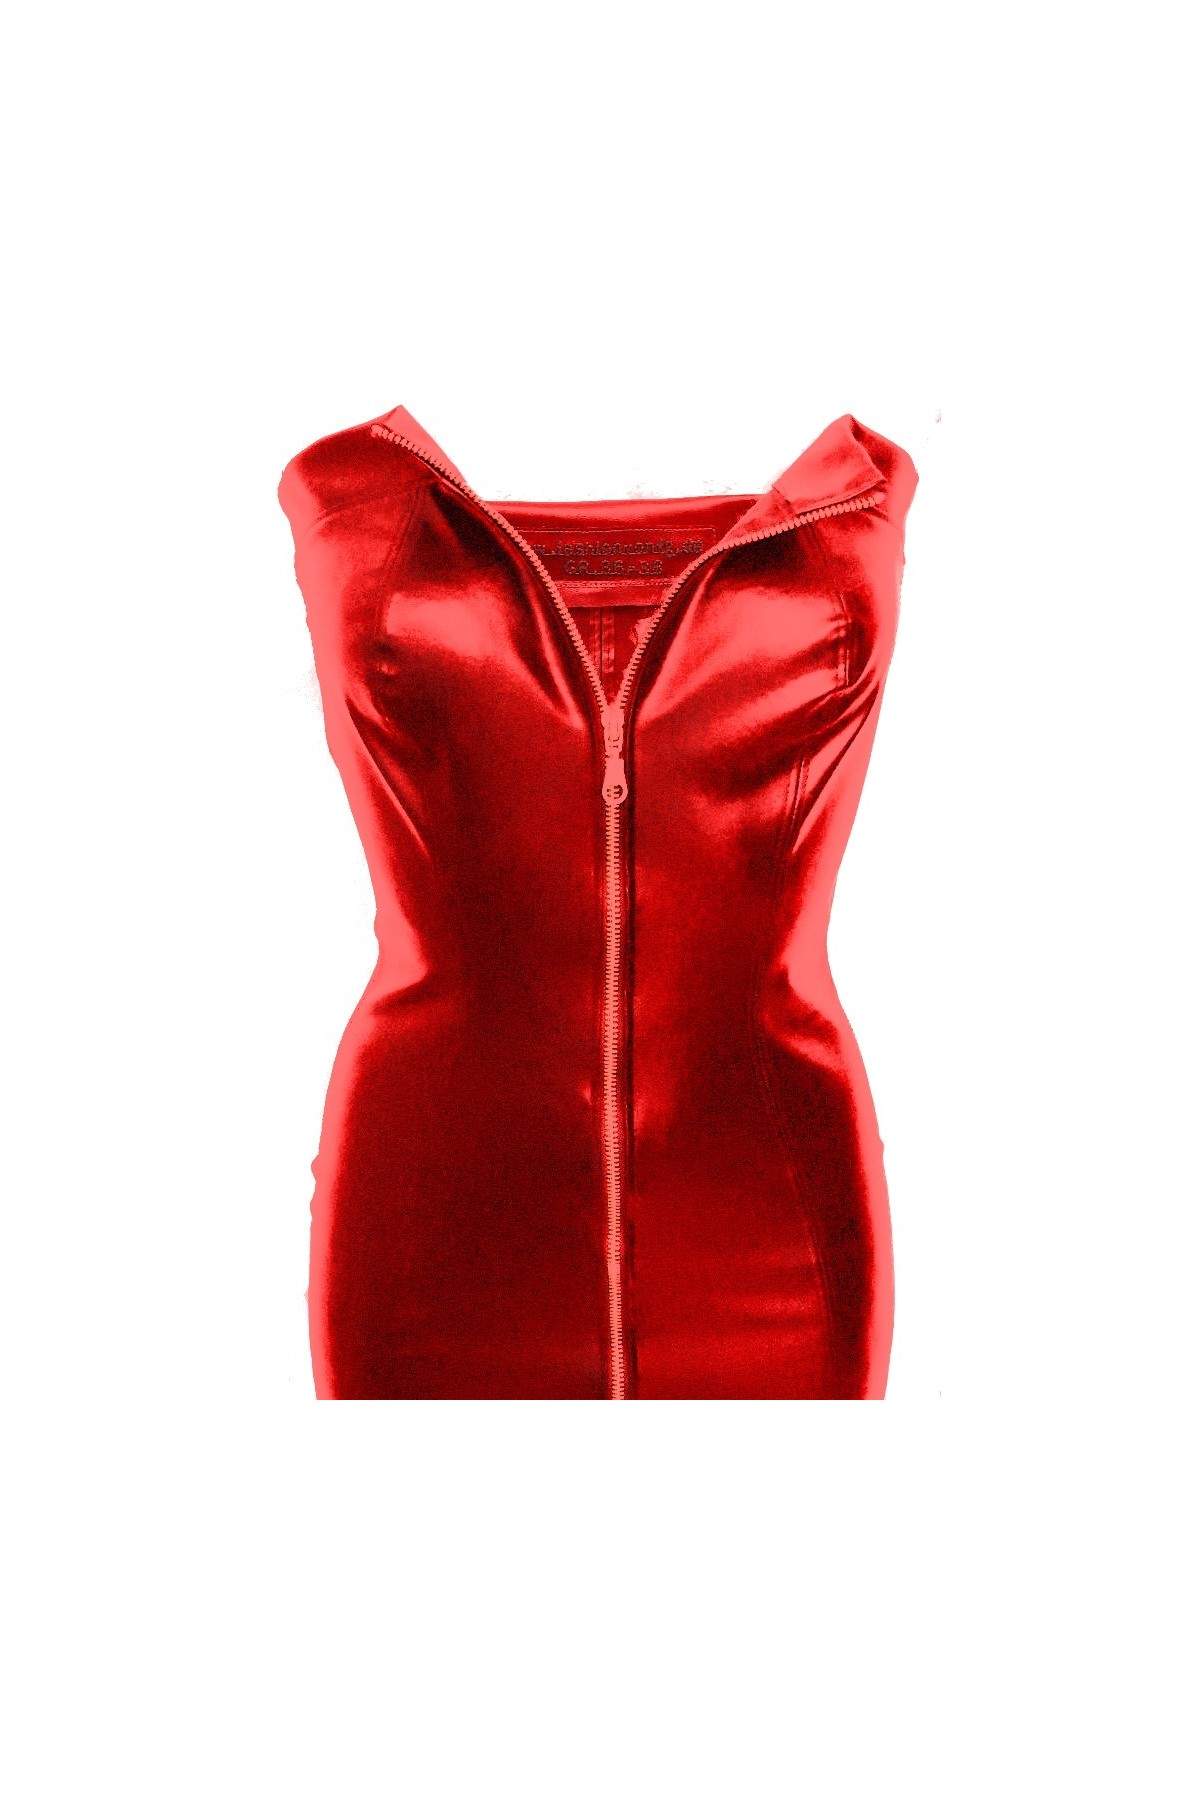 Vestido erótico de piel sintética rojo tallas 32 - 48 - 